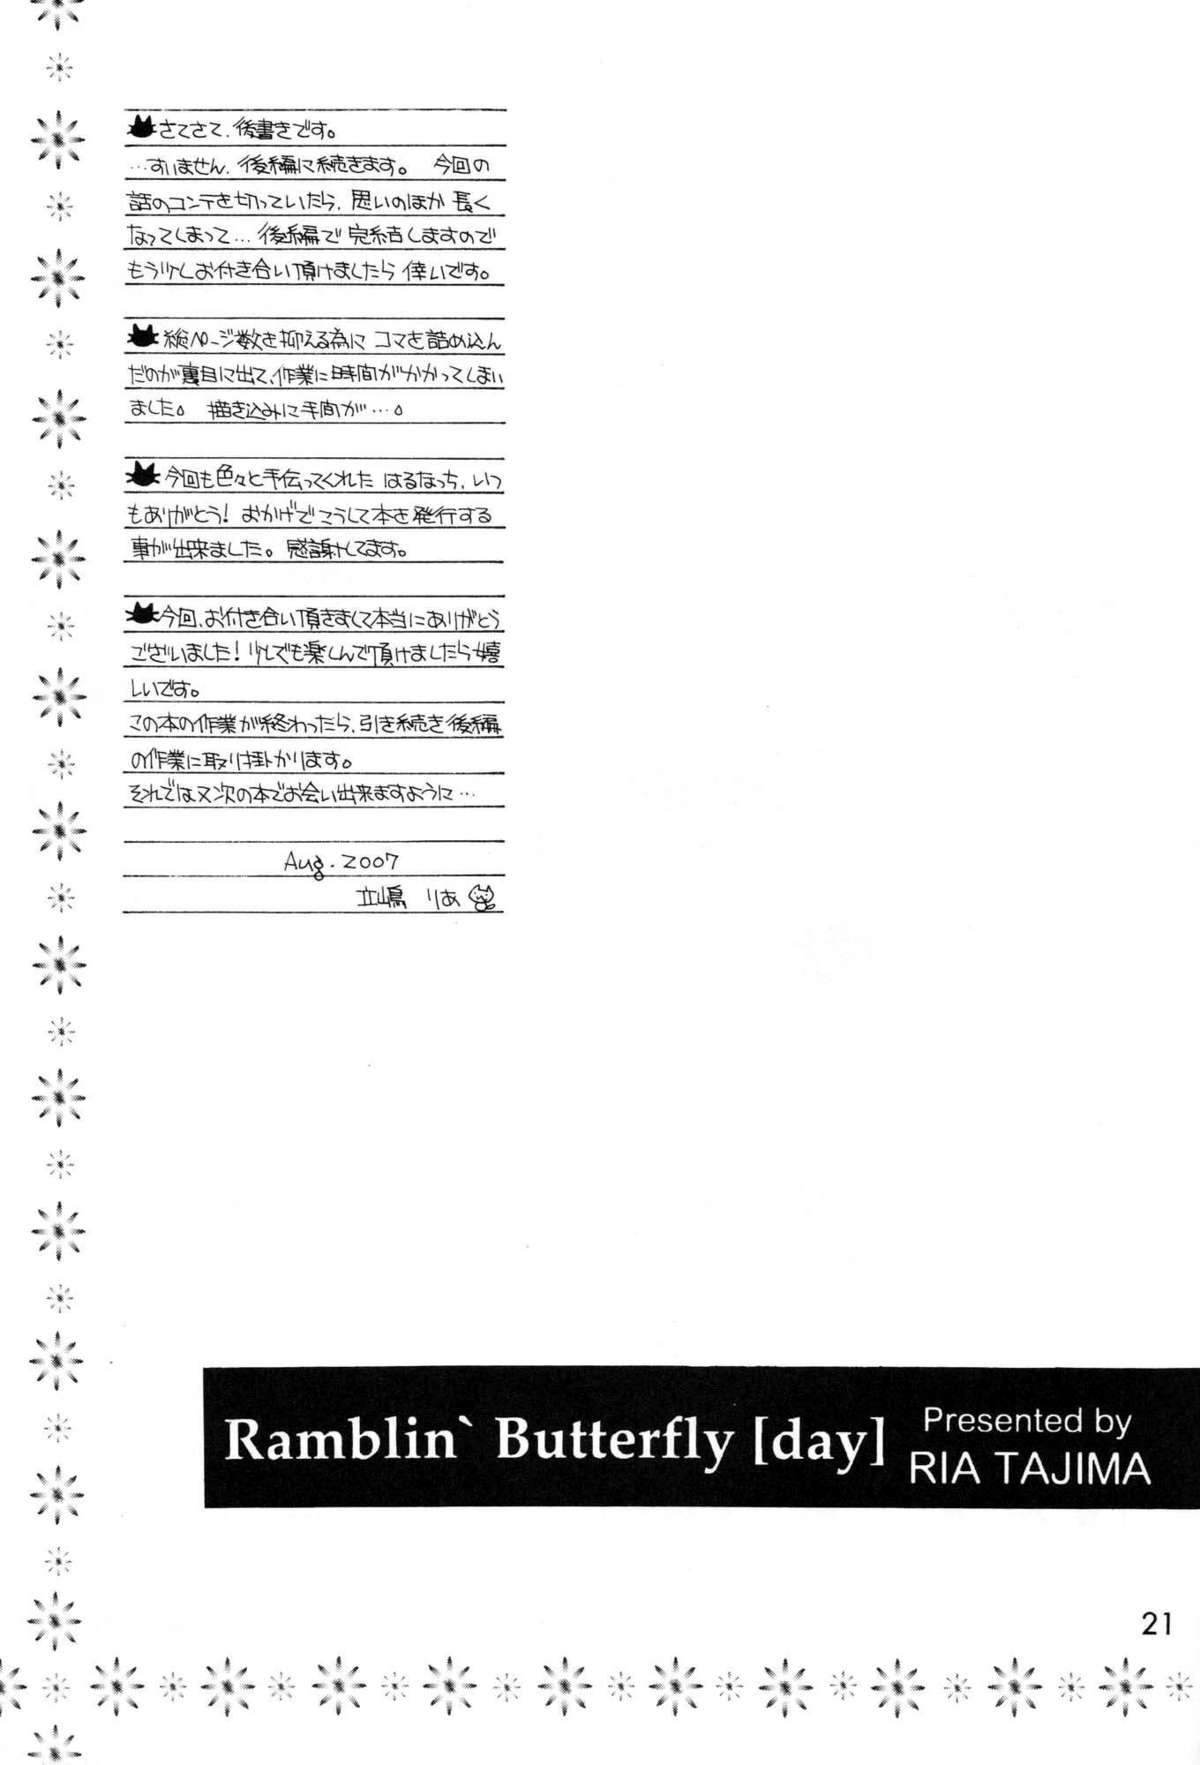 Ramblin' Butterfly 19